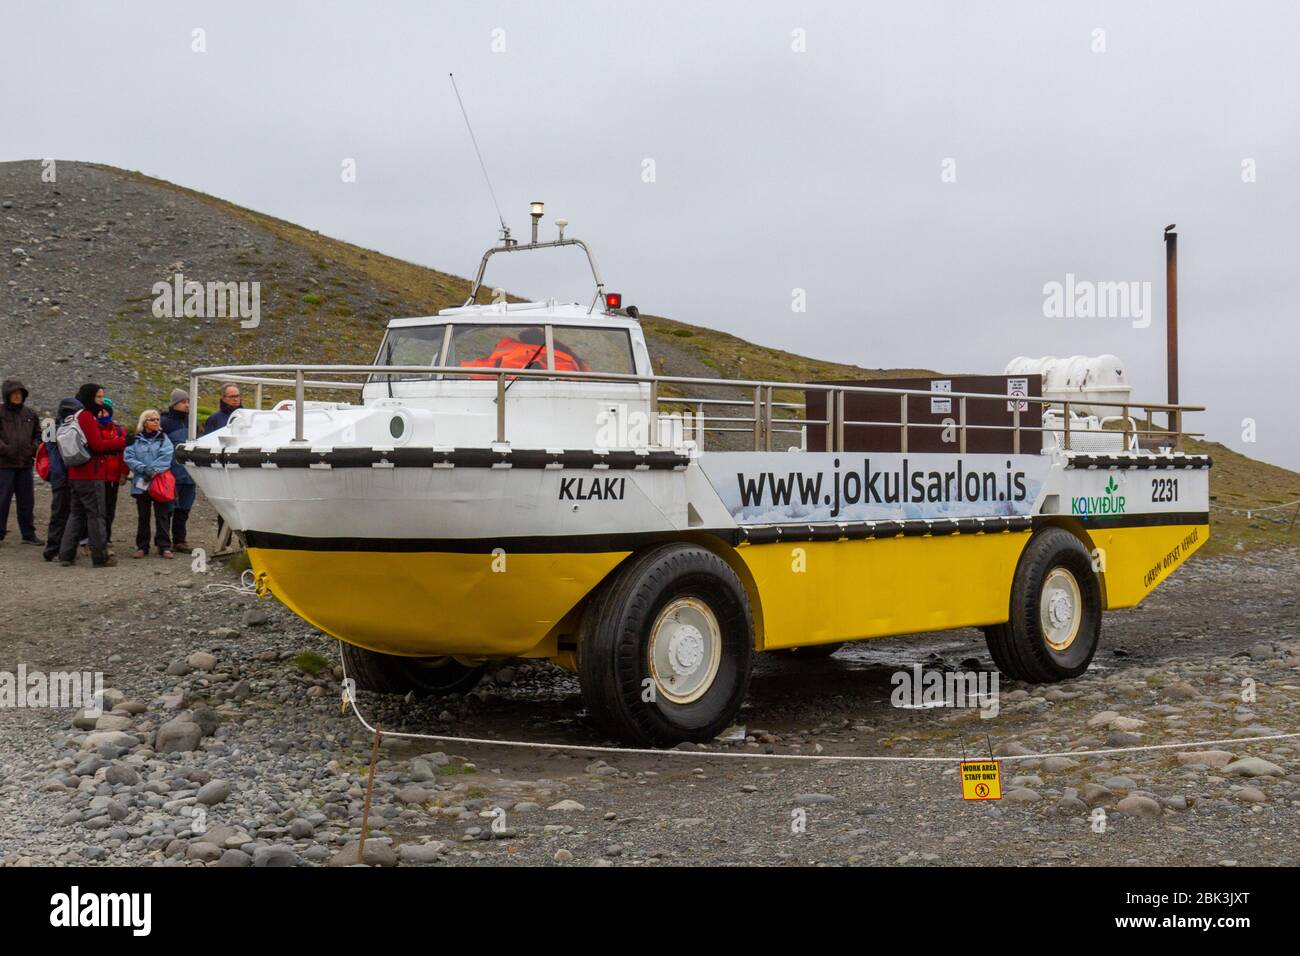 Un des bateaux amphibies utilisés comme bateau touristique sur le lagon de Jokulsarlon en conduisant sur terre, sud de l'Islande. Banque D'Images